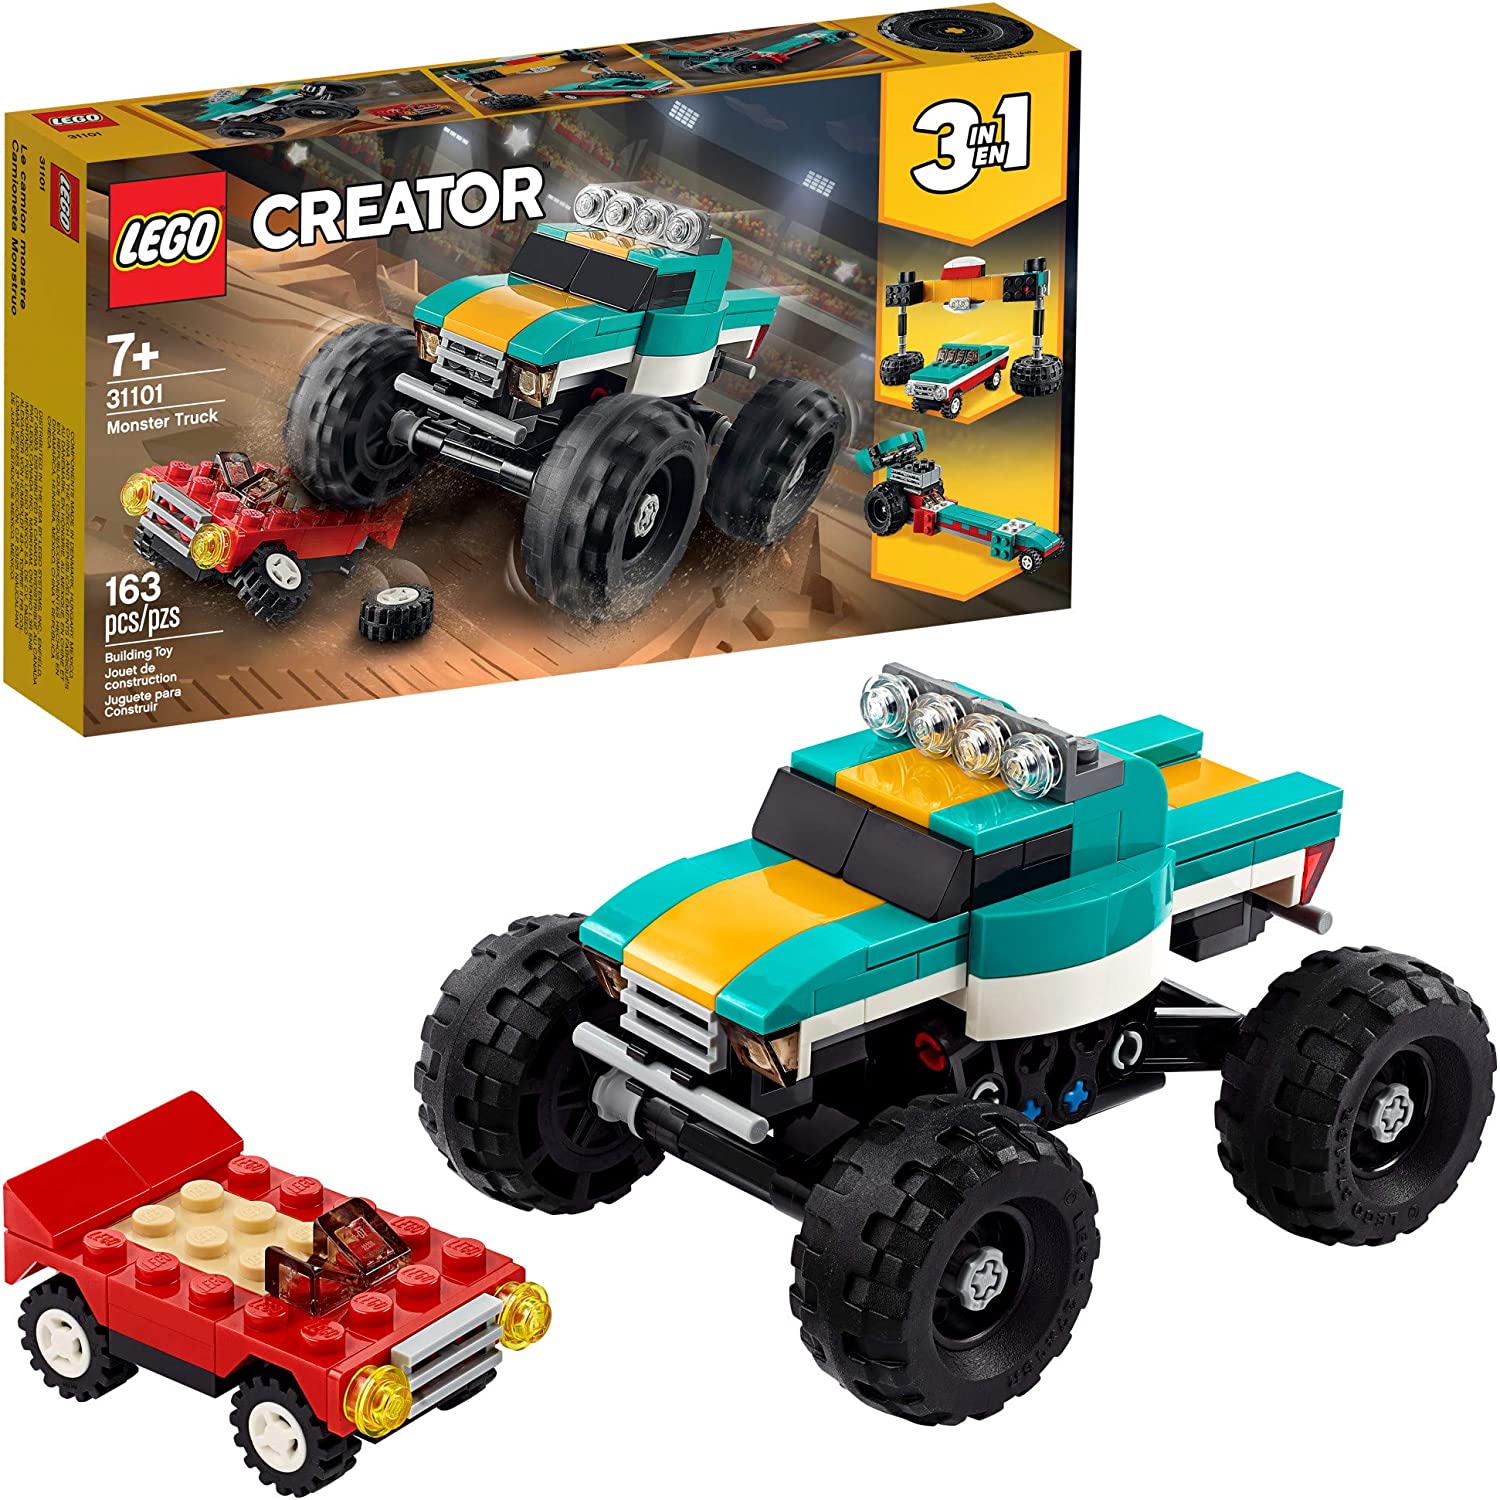 Lego Creator 3in1 Monster Truck 31101